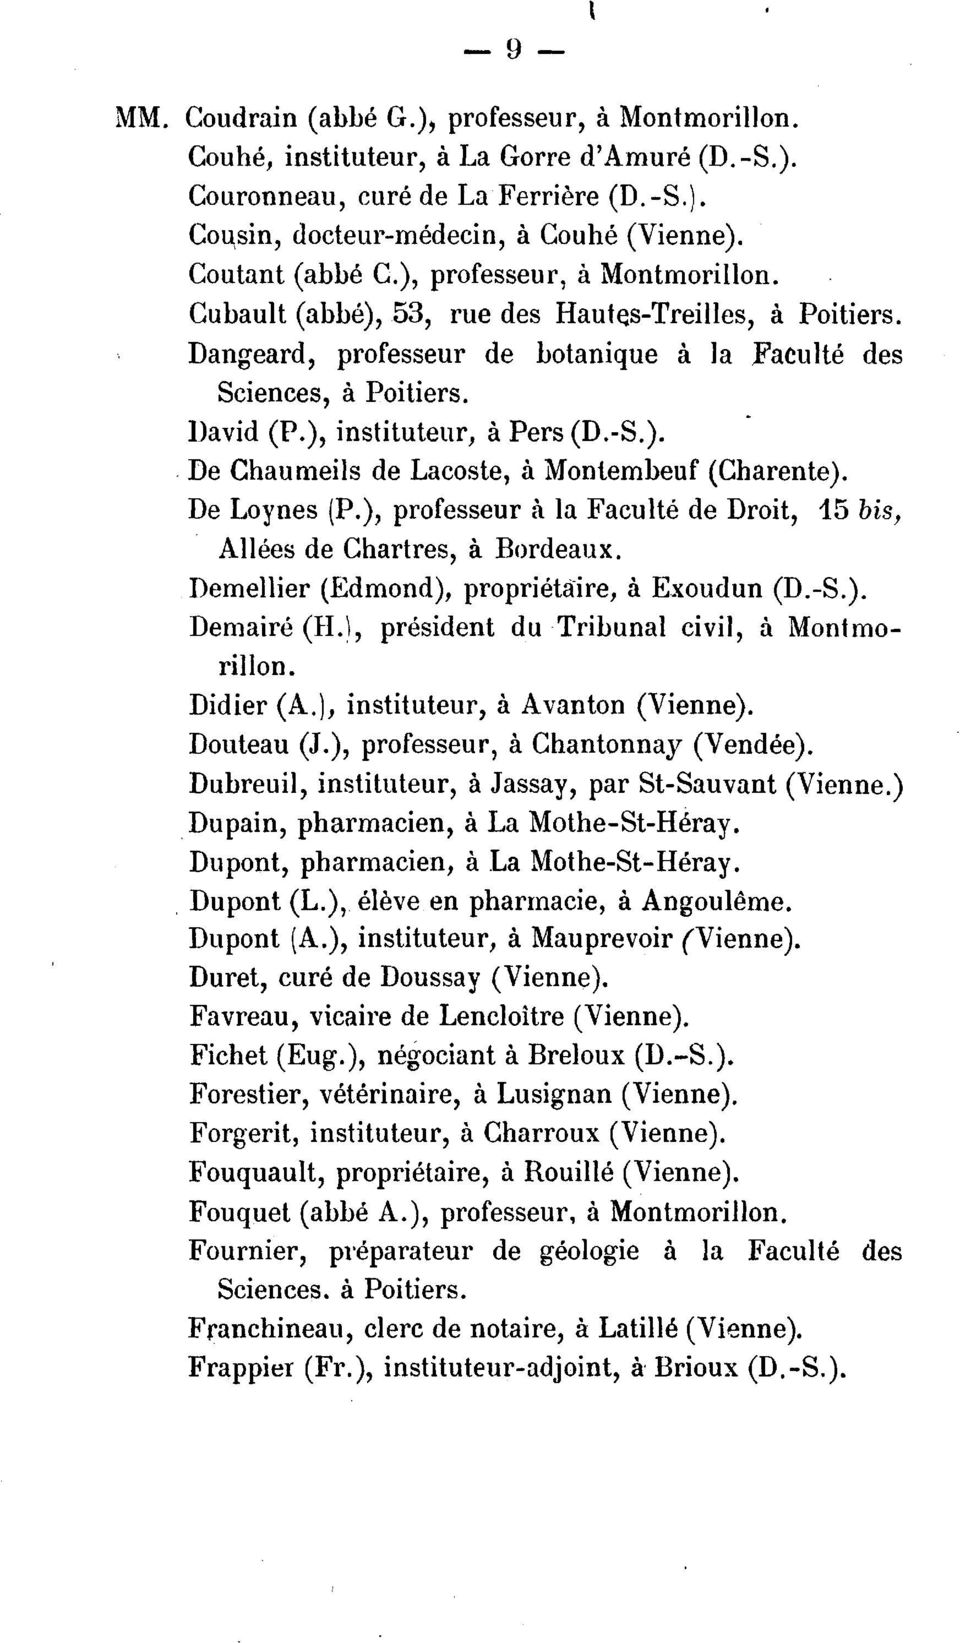 ), instituteur, a Pers (D.-S. ).. De Chaumeils de Lacoste, a Montembeuf (Charente). De Loynes (P.), professeur a la Faculte de Droit, 15 bis, Allees de Chartres, a Bordeaux.